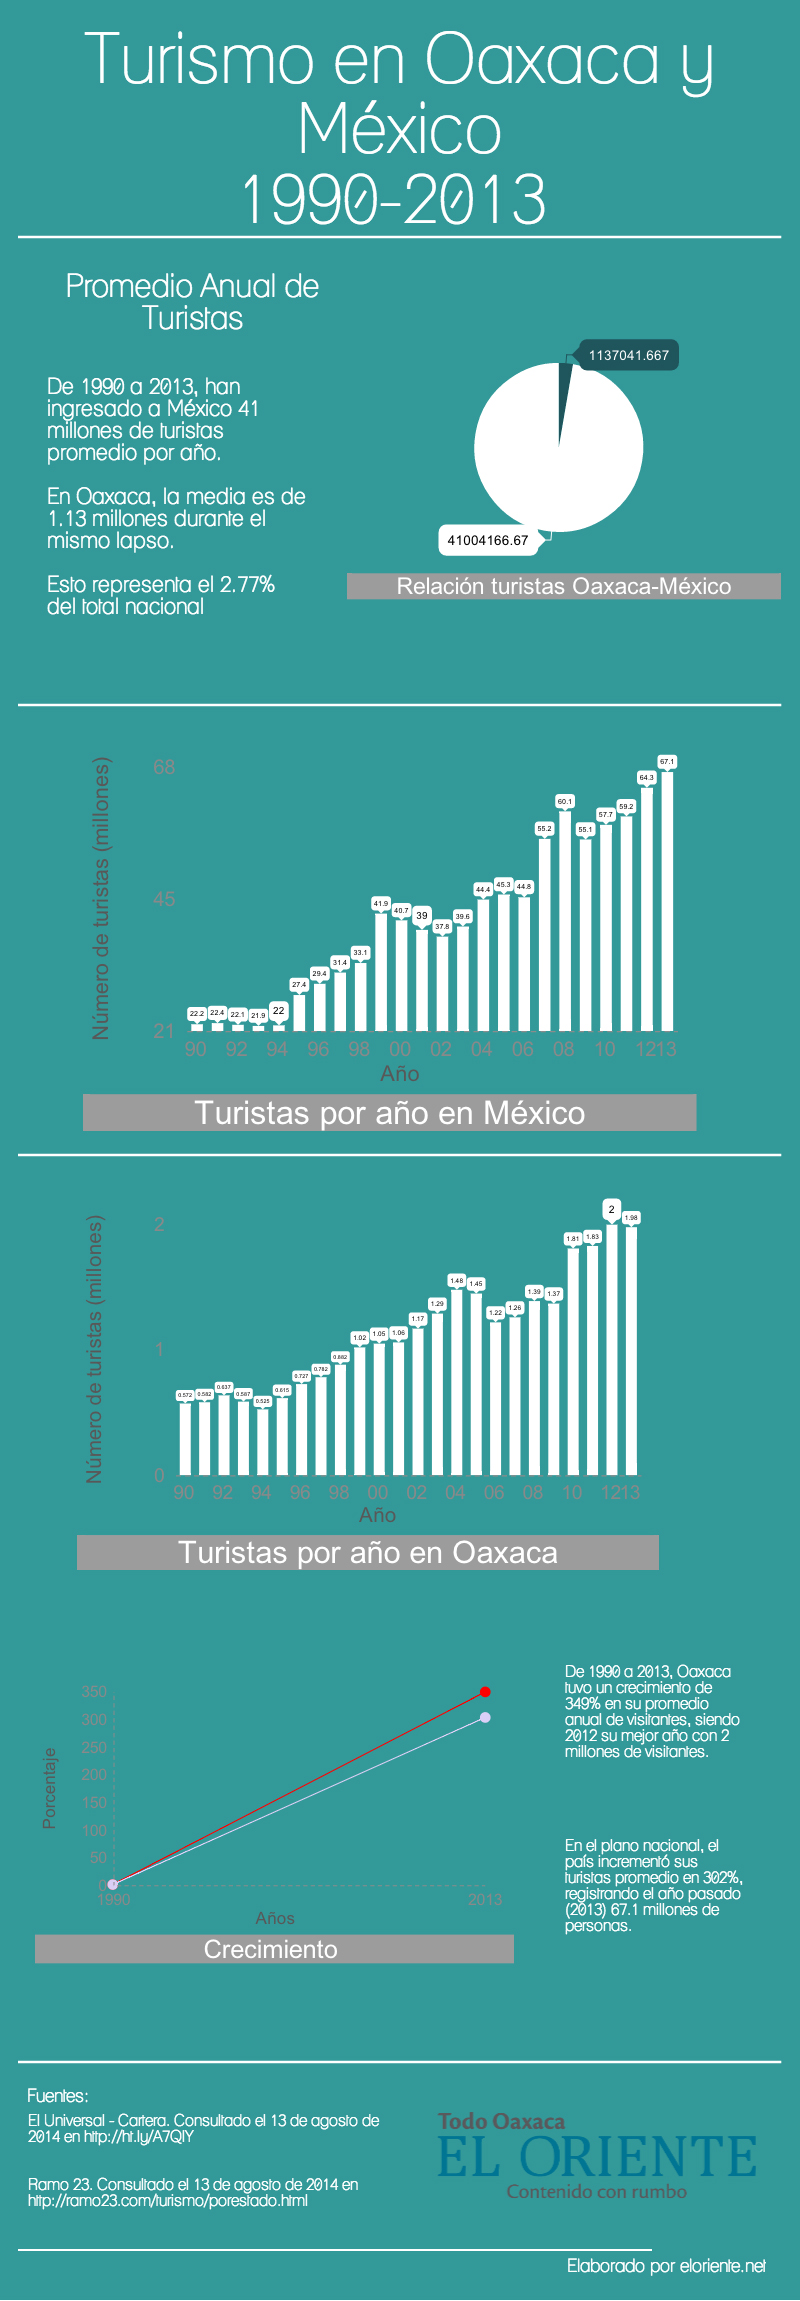 El Turismo en Oaxaco Y Mèxico, infografia.